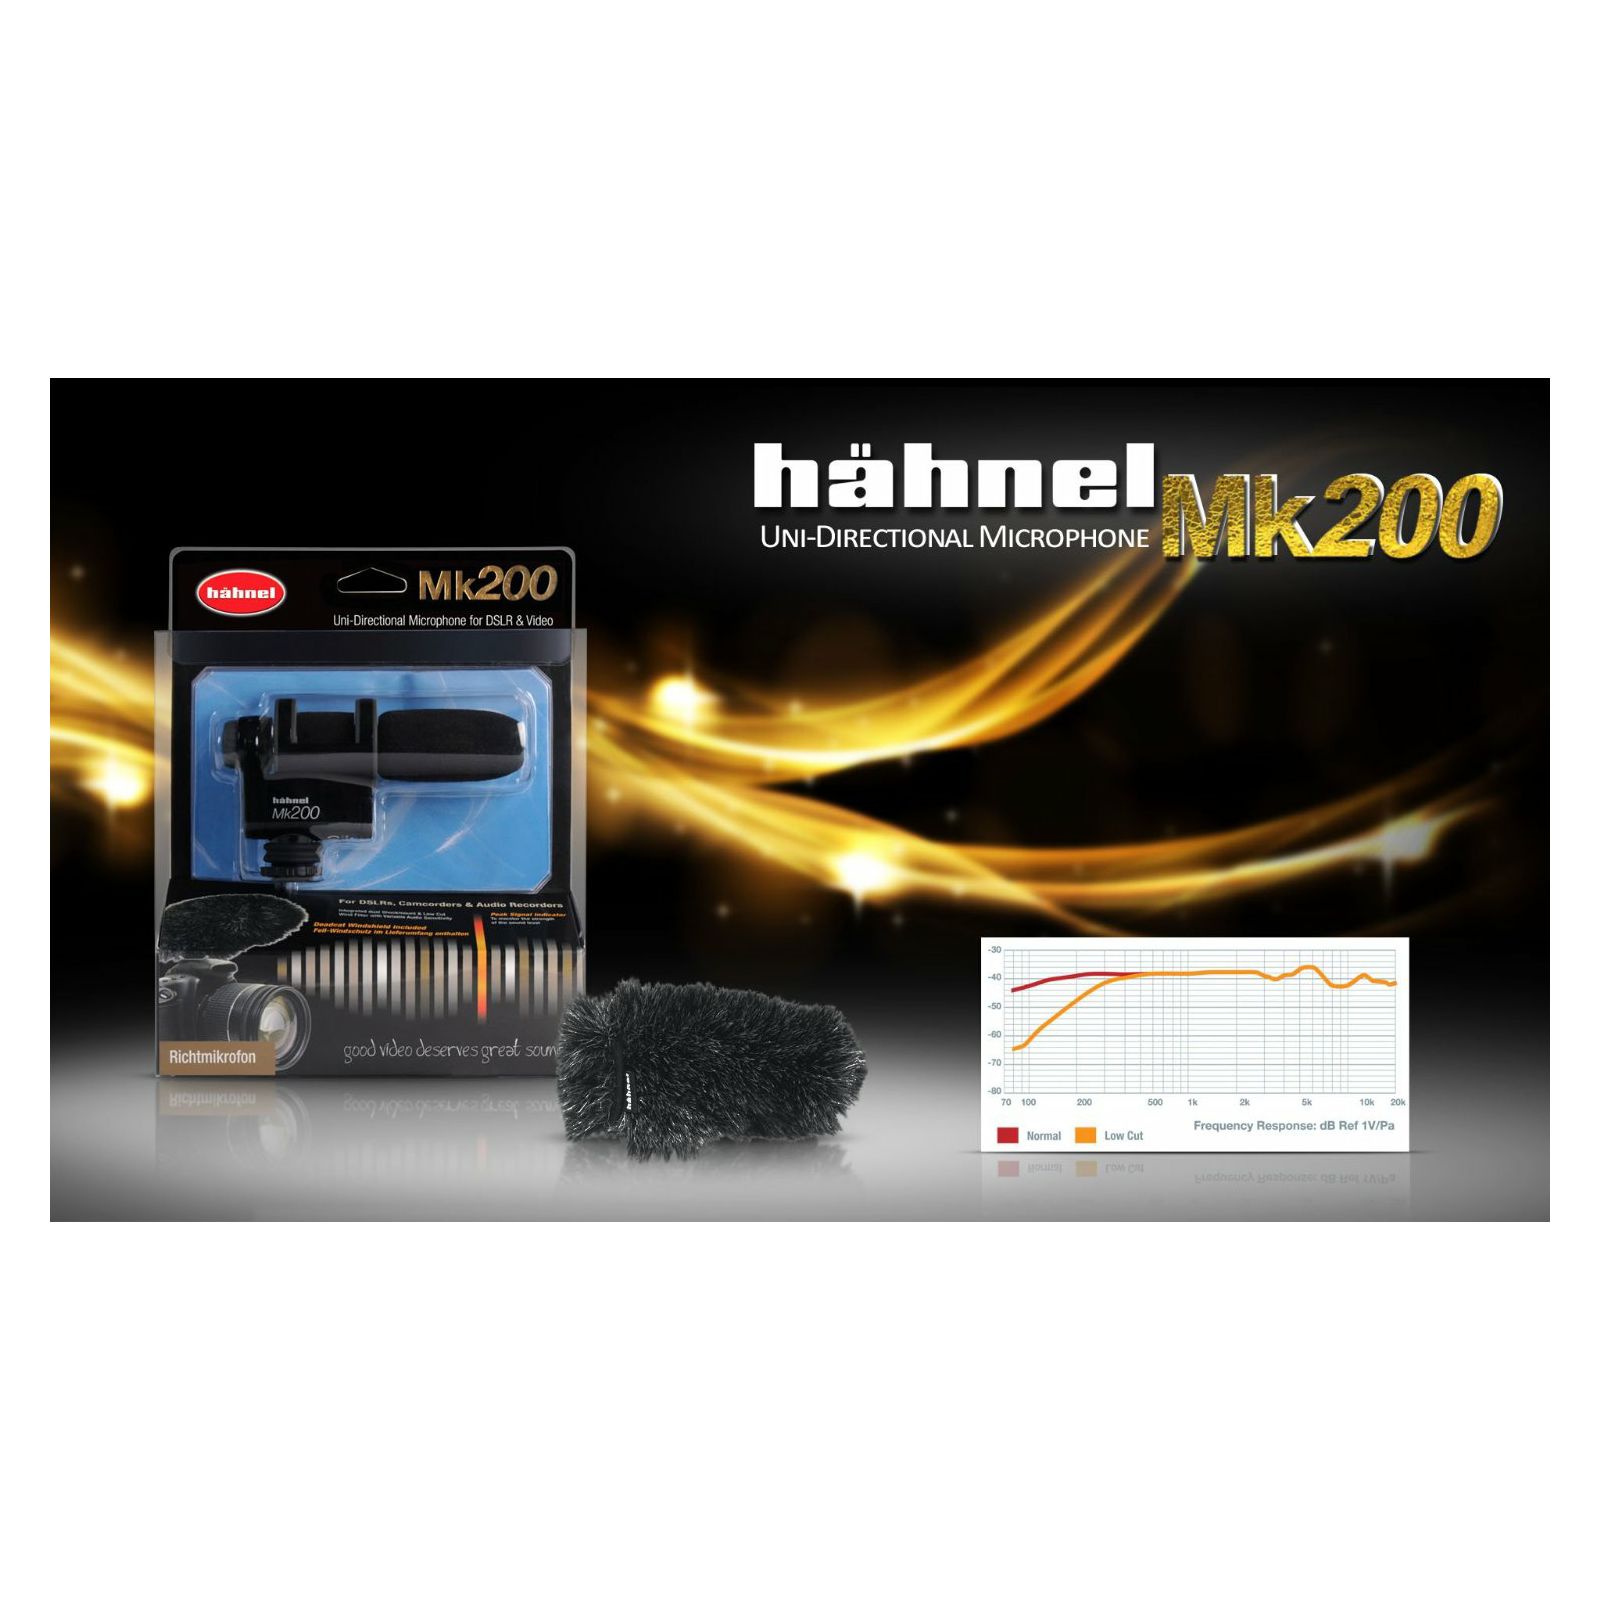 Hähnel Mk200 Microphone DSLR Video Dual-Mono mikrofon (1000 881.0)